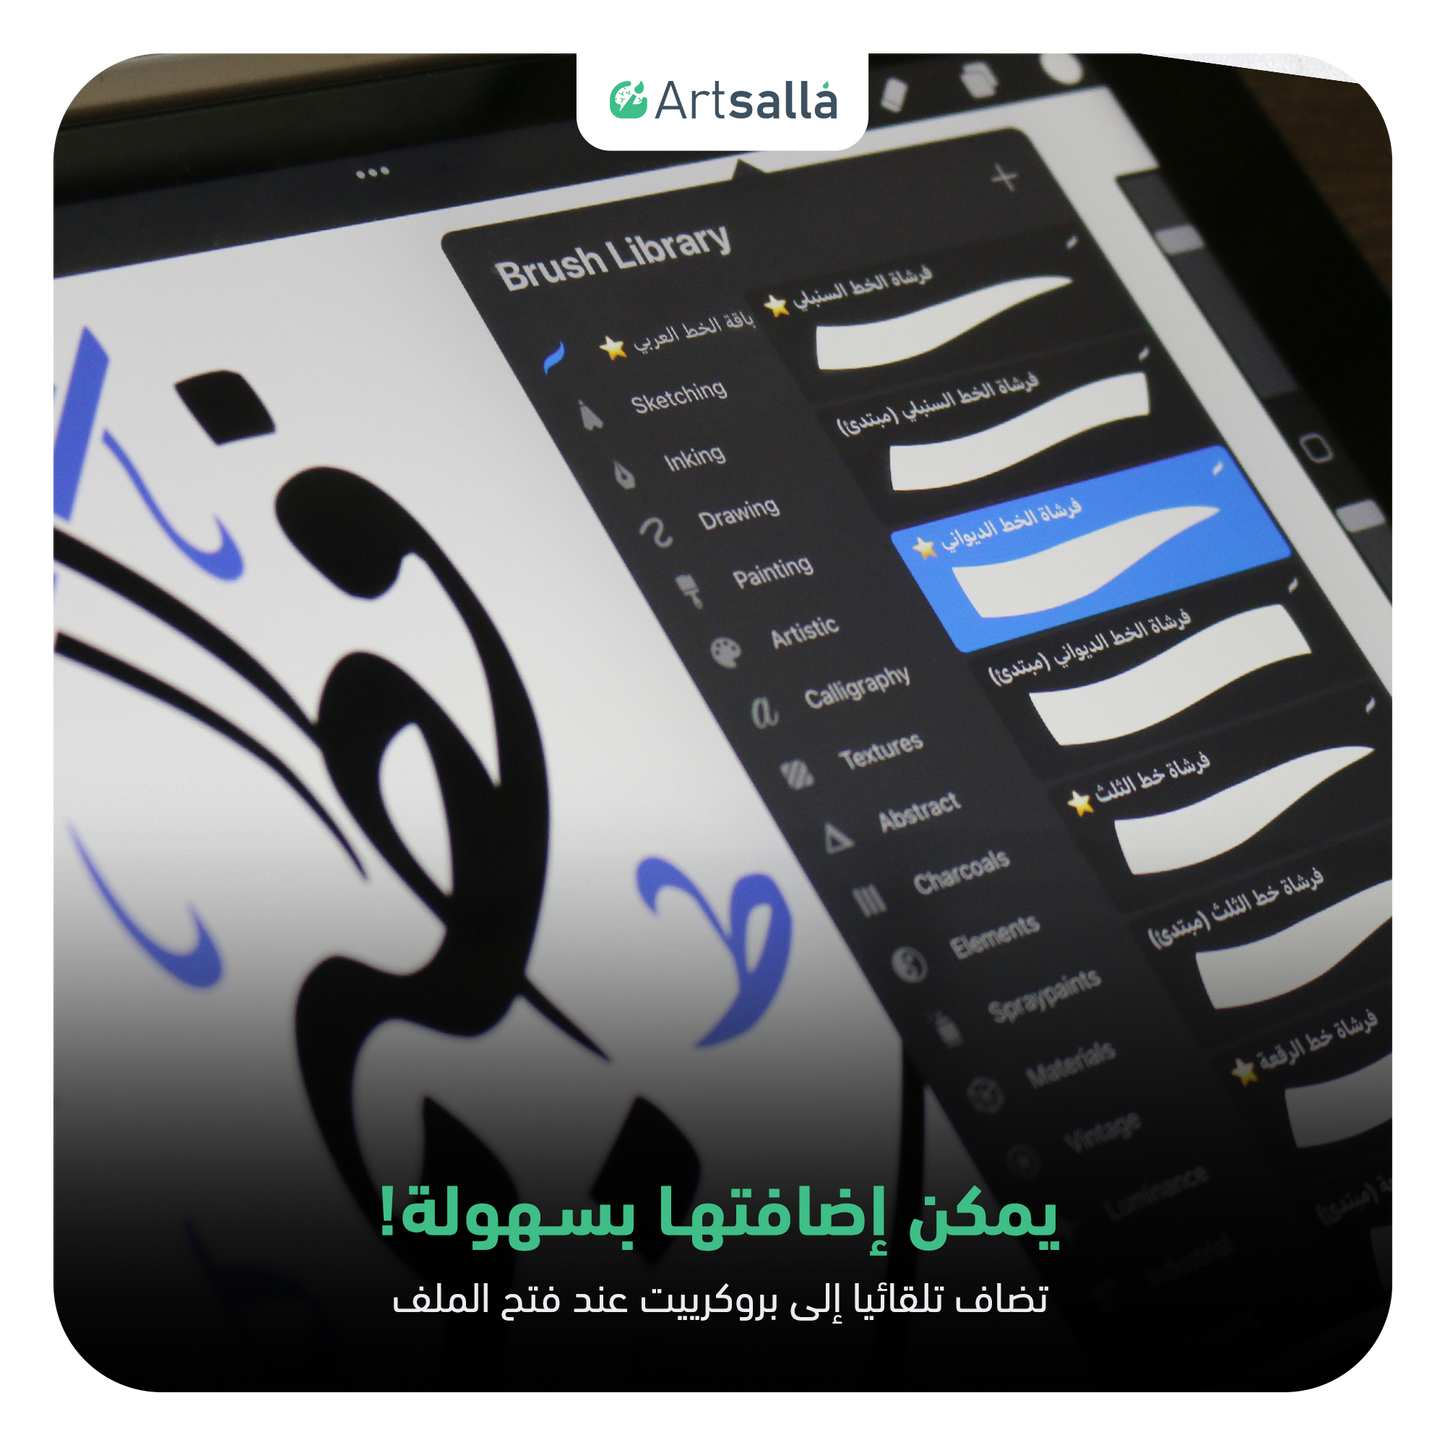 فرش وتشكيلات الخط عربي تعمل على تطبيق بروكريت عبر الآيباد مقدمة من متجر آرت سلة